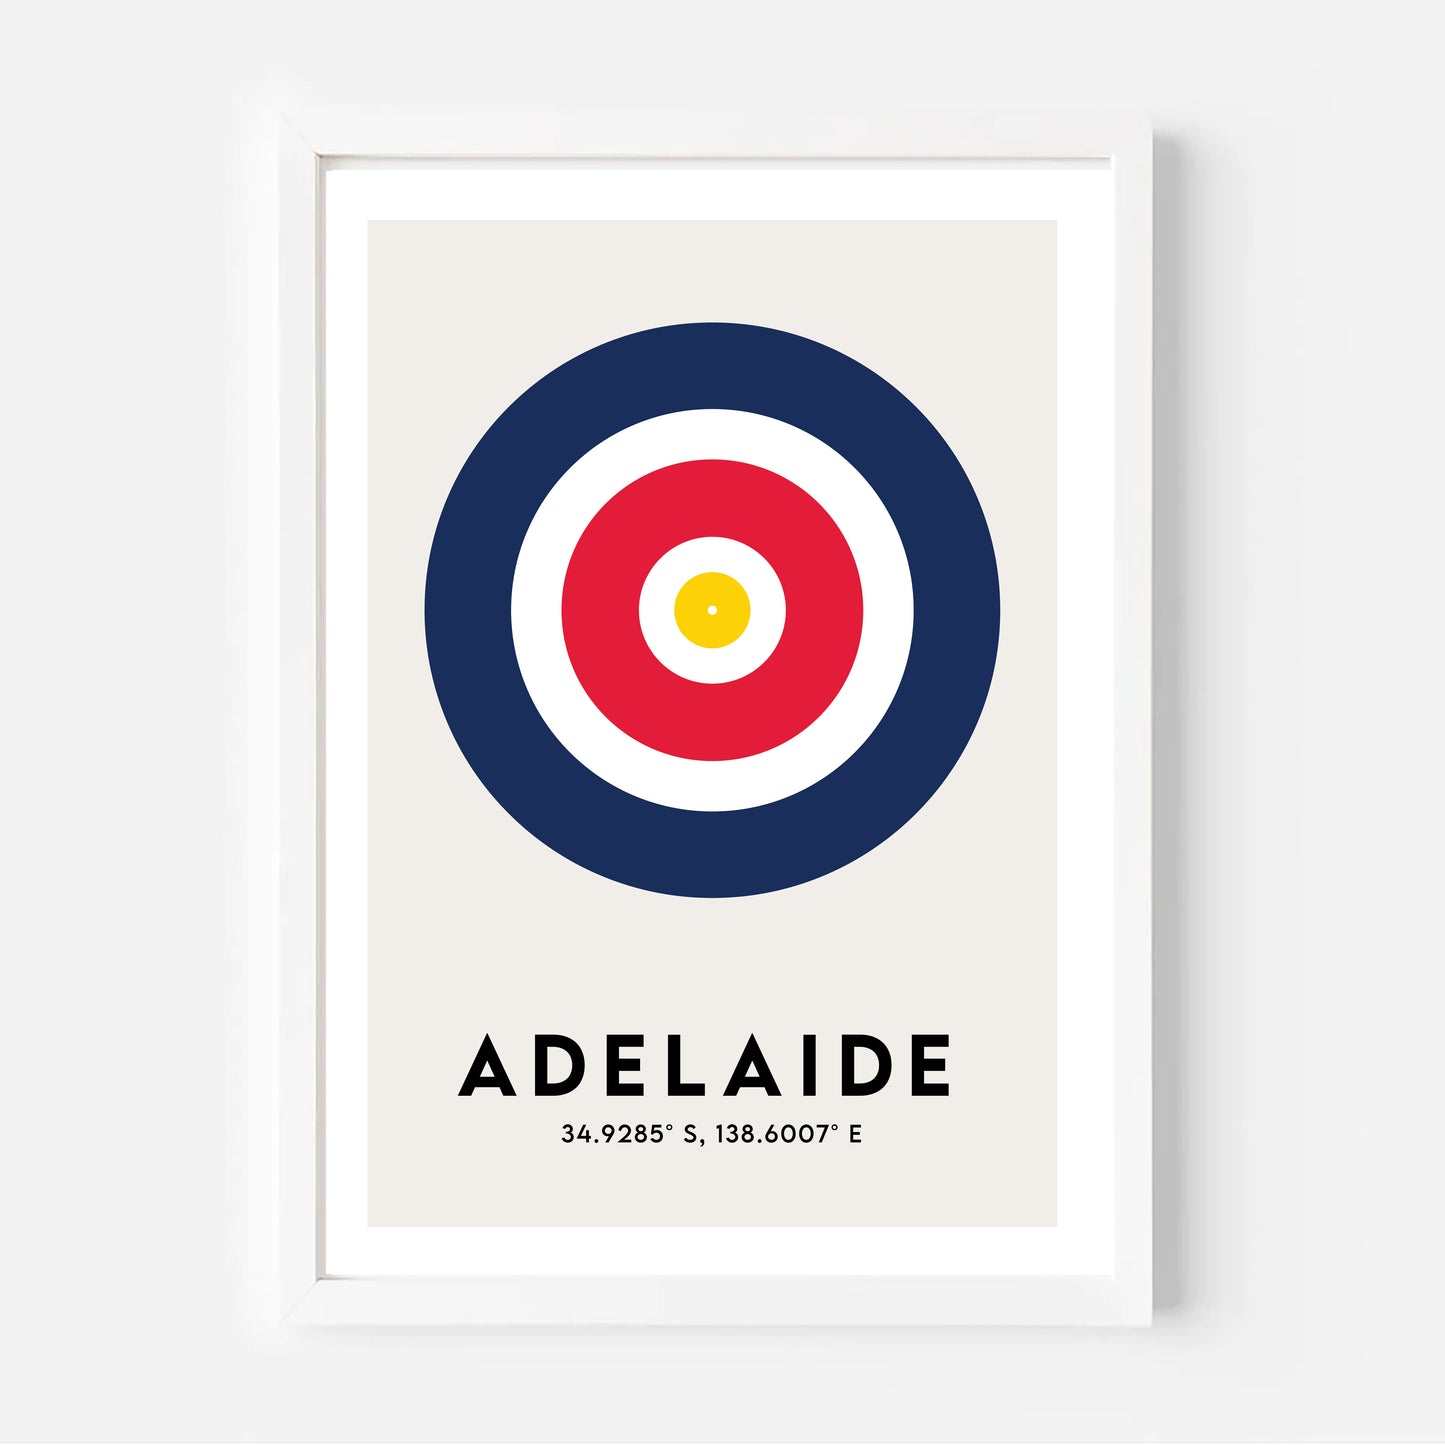 Origin 'Adelaide'